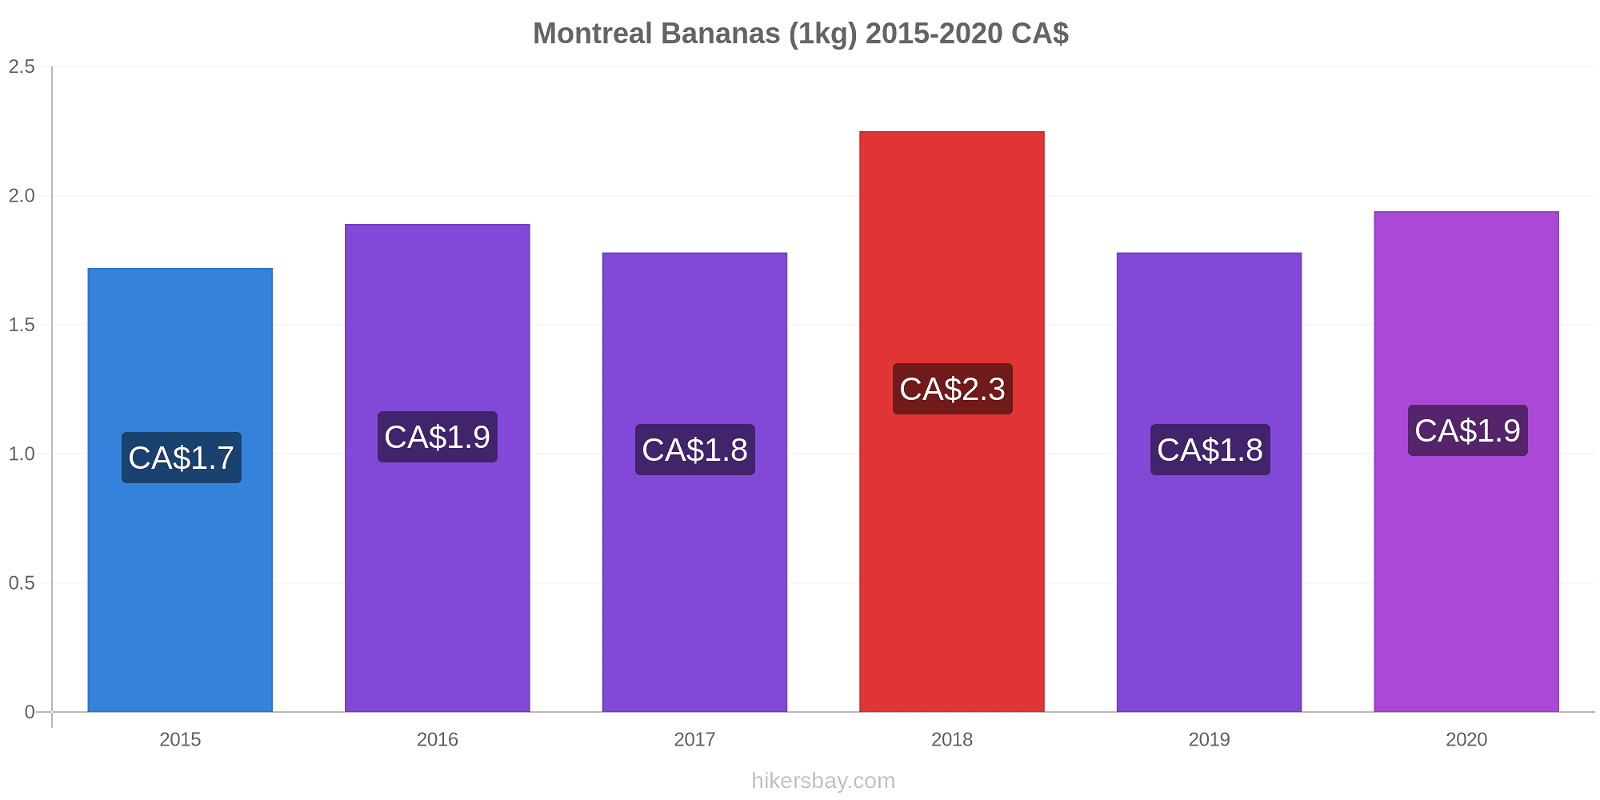 Montreal variação de preço Banana (1kg) hikersbay.com